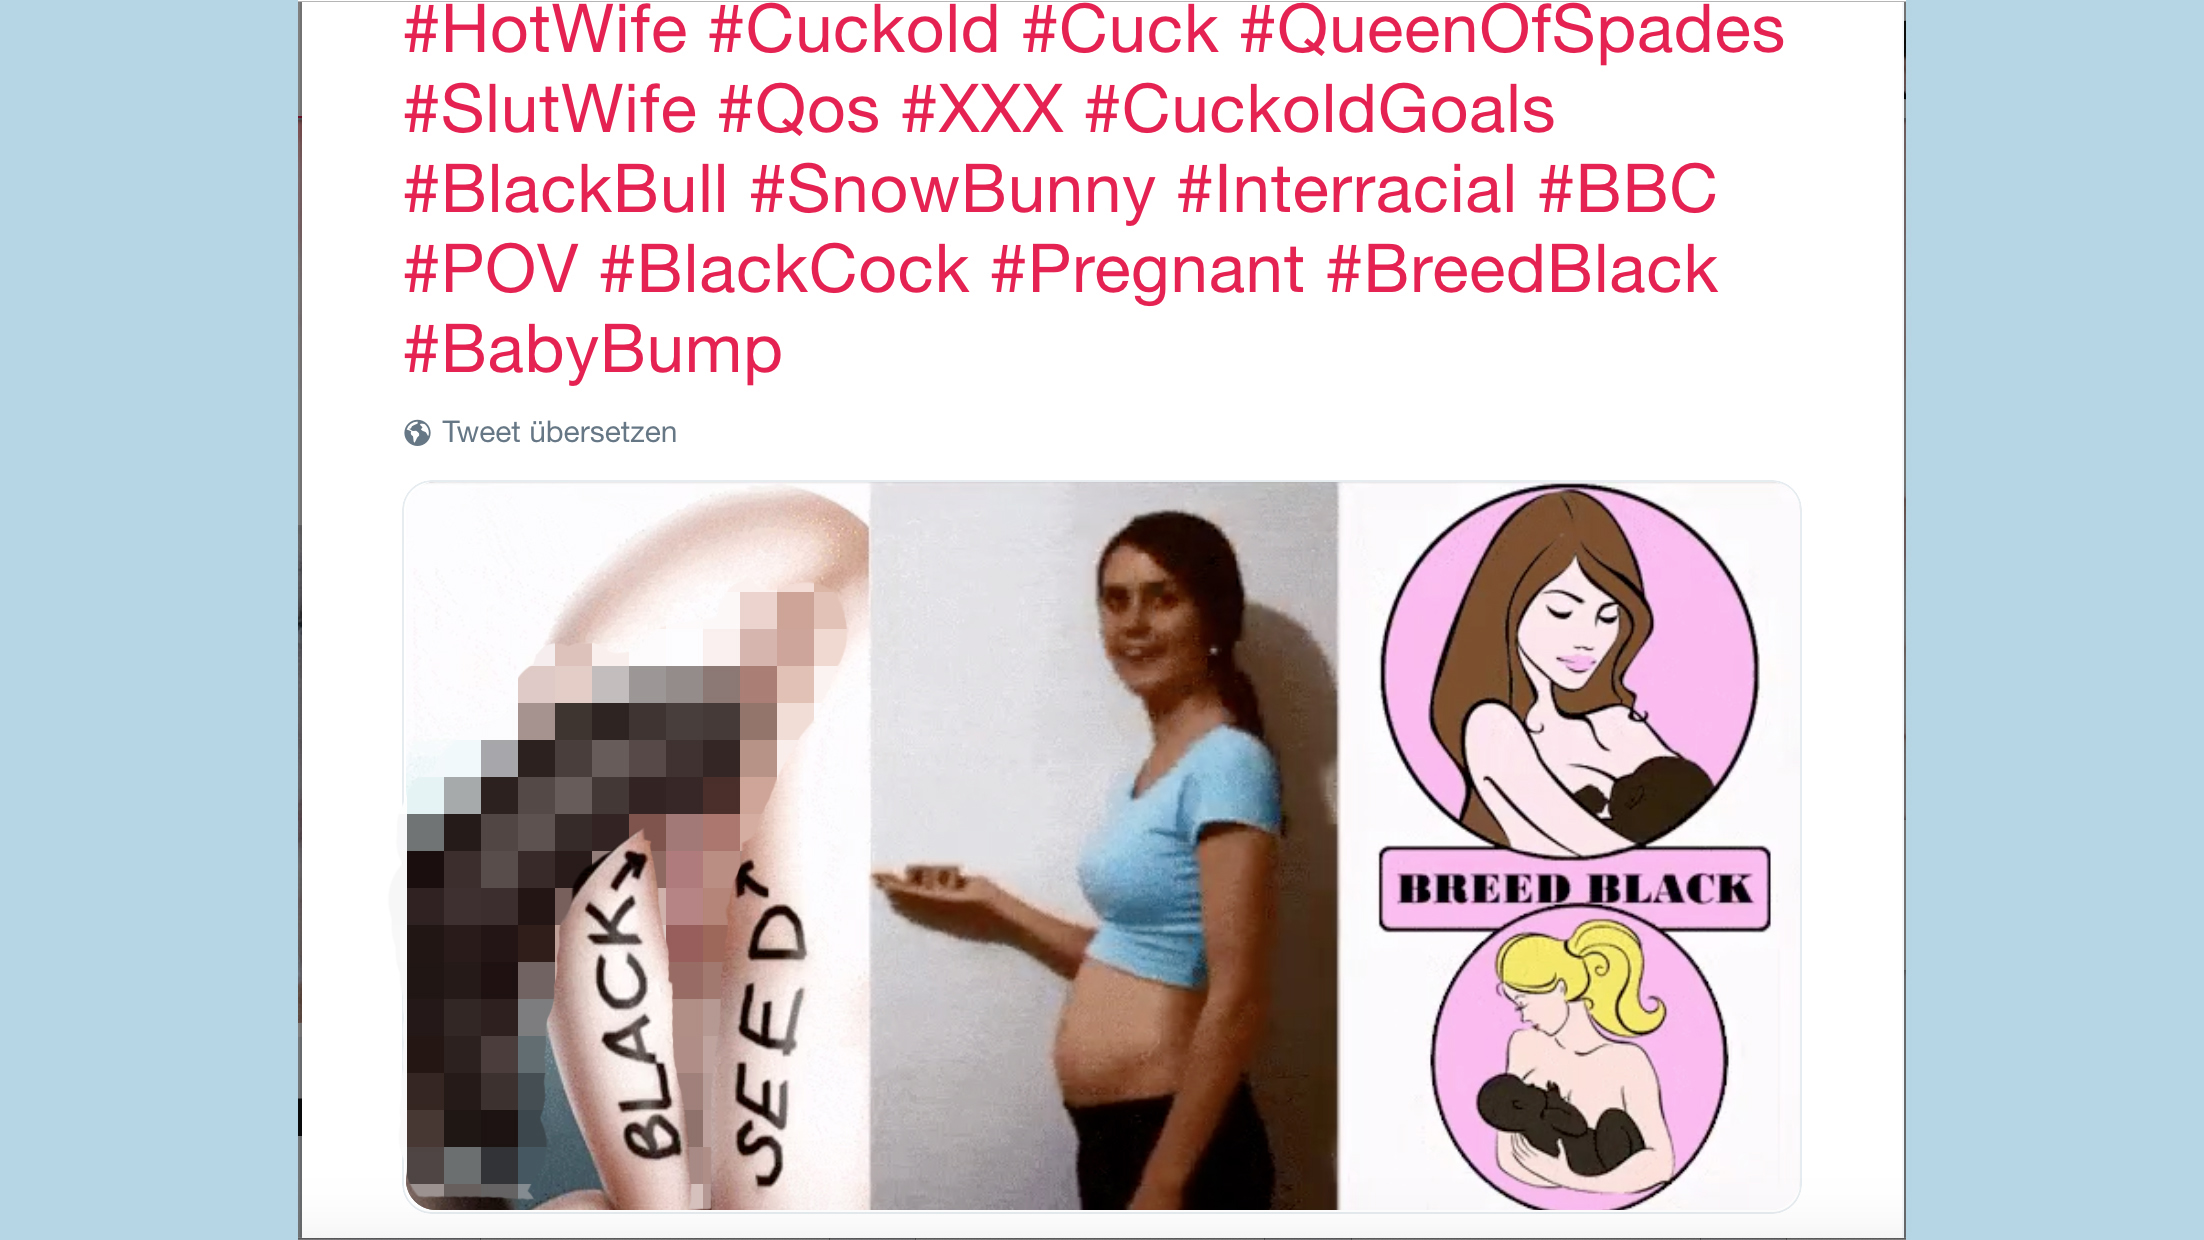 Interracial Text - WeiÃŸe Frauen suchen auf Twitter nach \